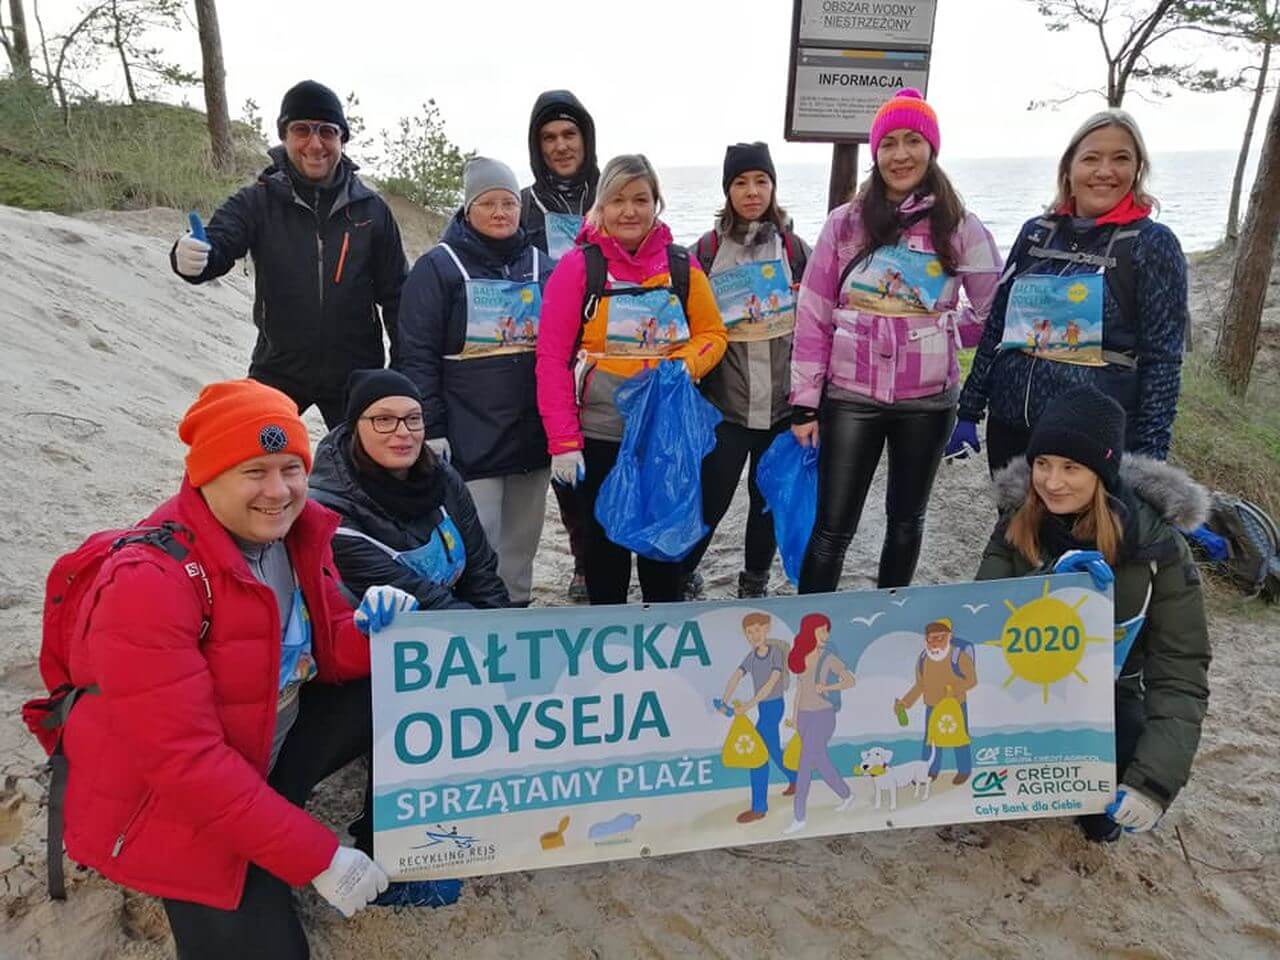 Bałtycka Odyseja ruszyła! Ponad 100 osób zebrało na plażach pół tony śmieci w dwa dni!